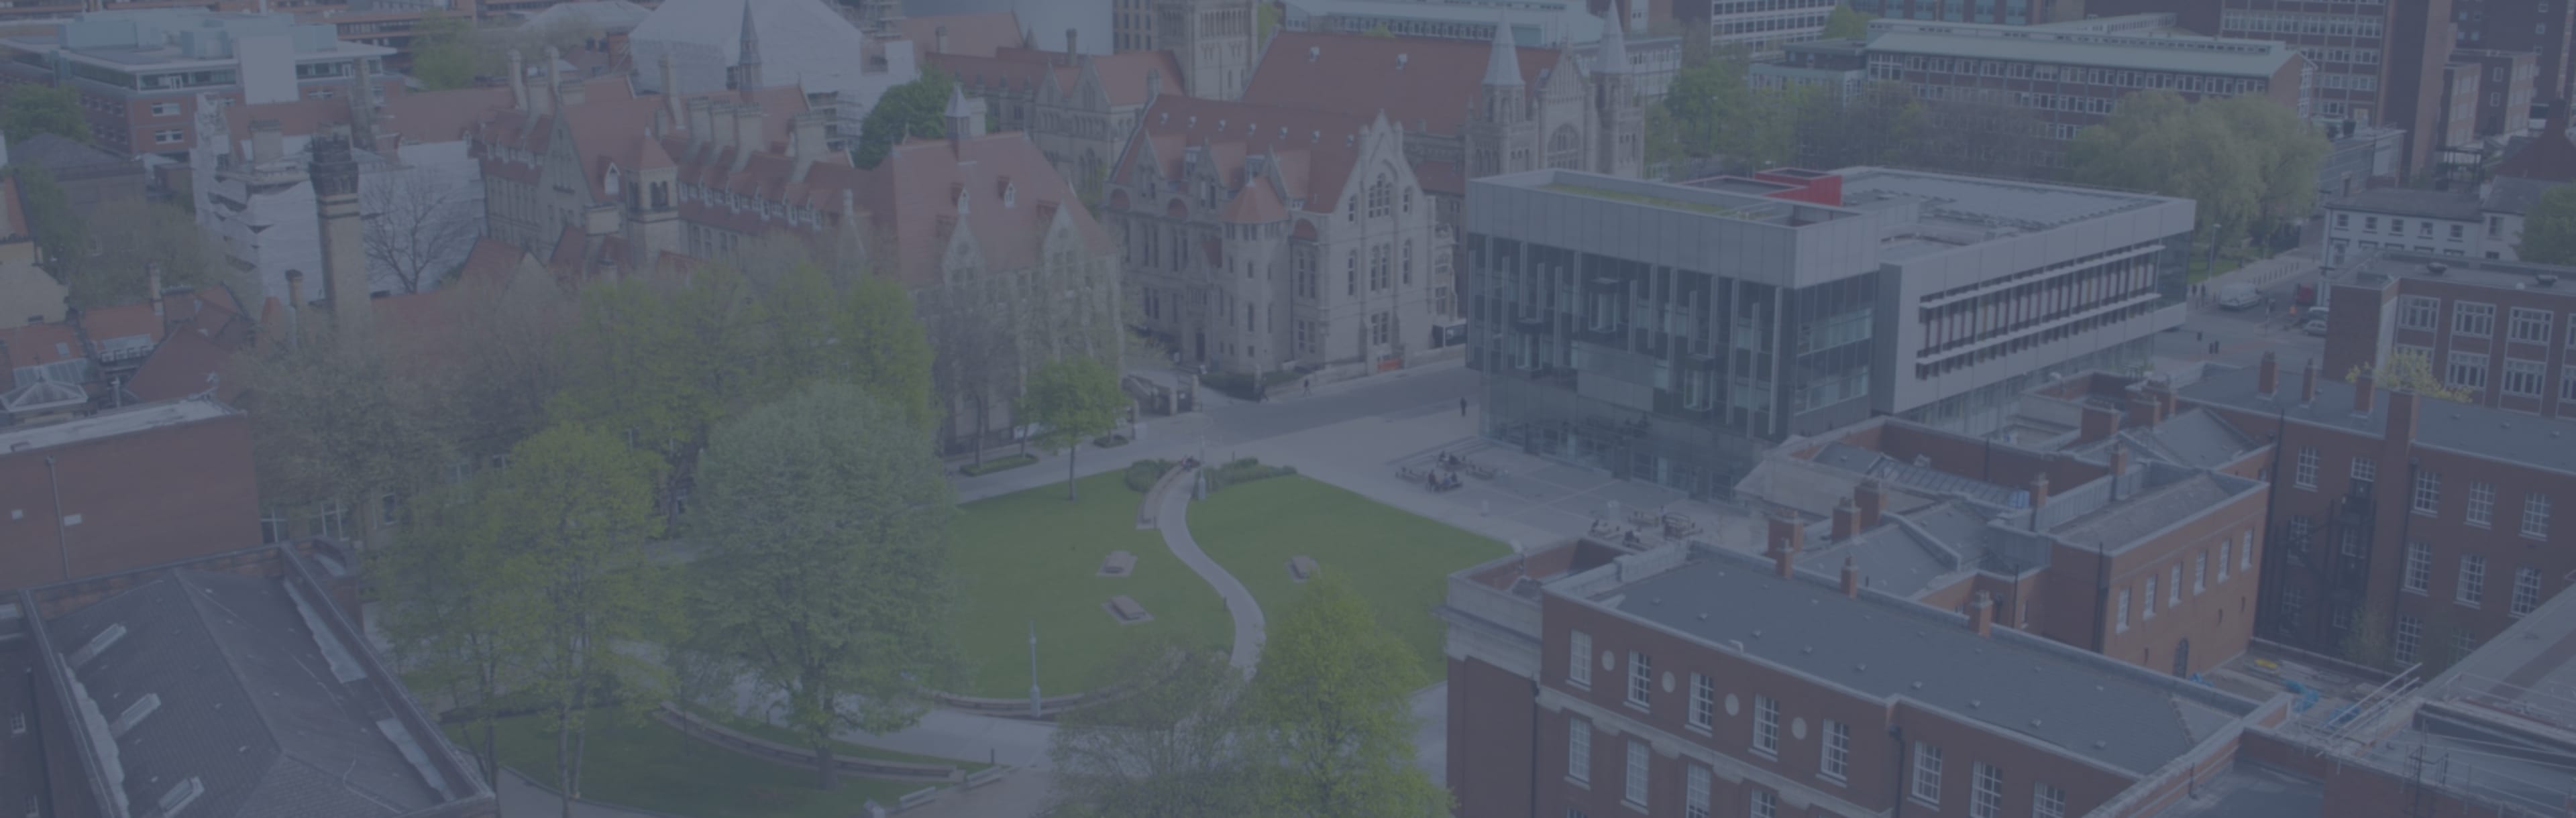 University of Manchester LLB en derecho con política